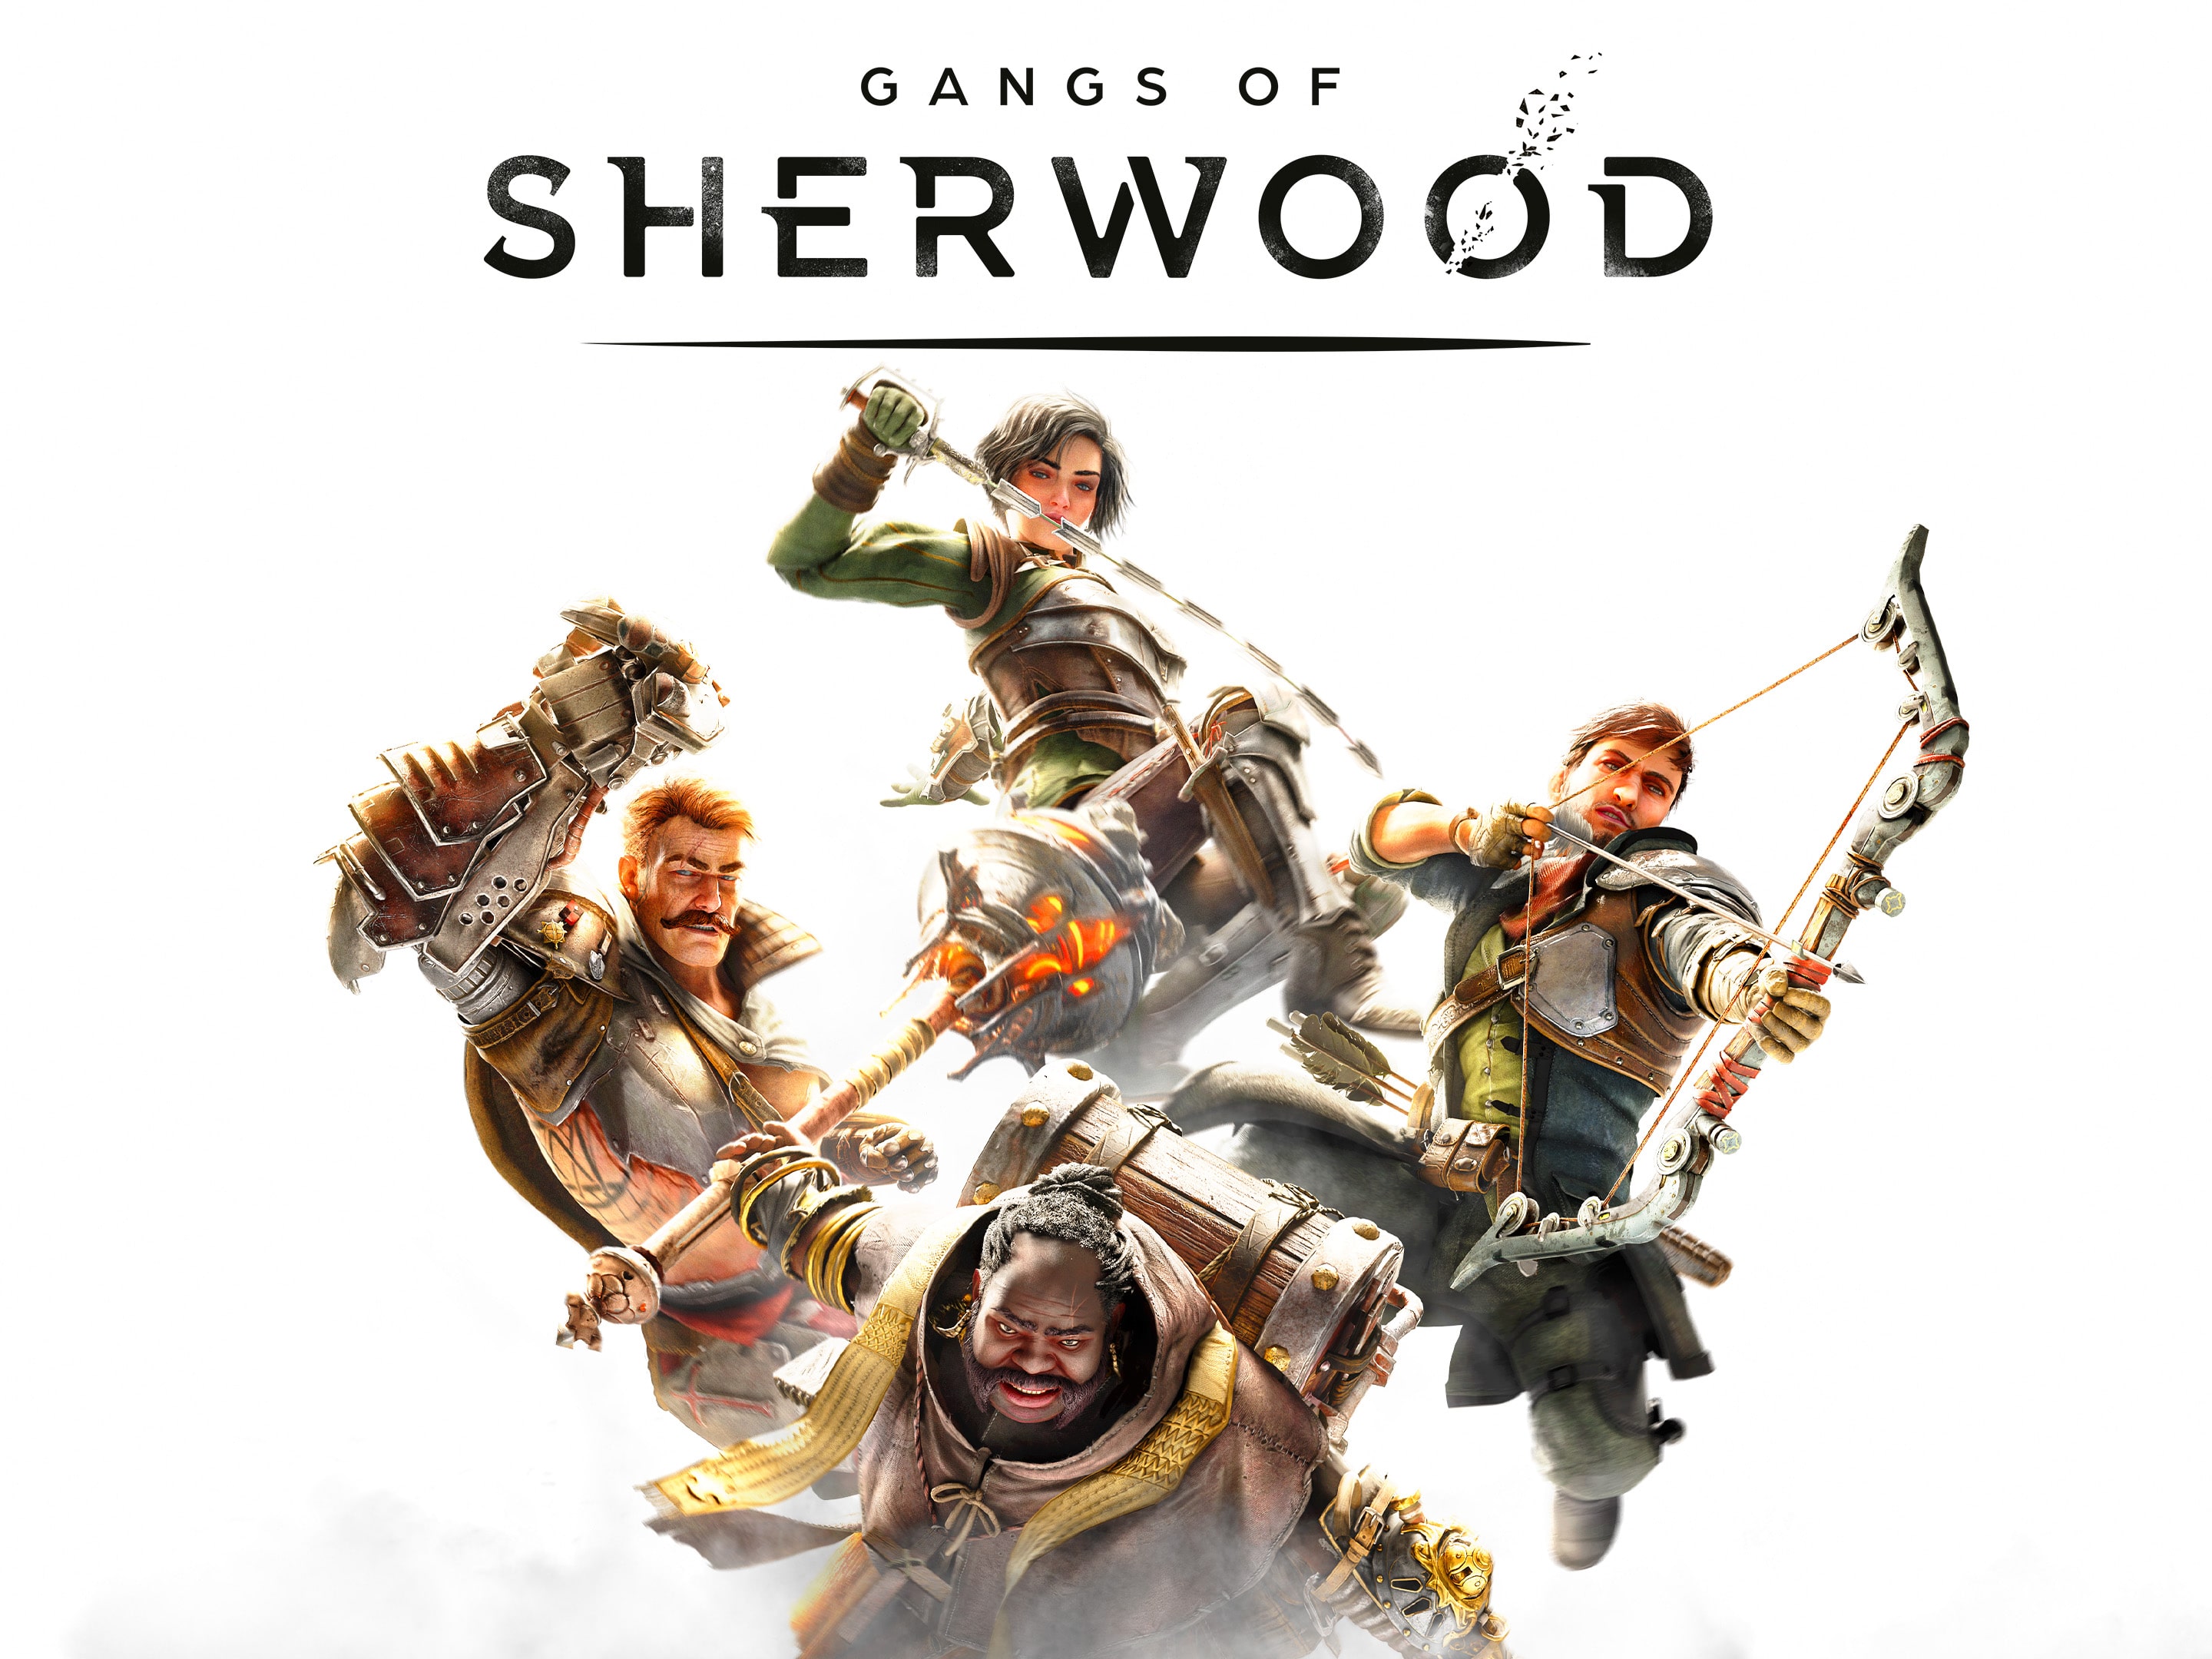 Free iPhone game: Robin Hood: Sherwood Legend